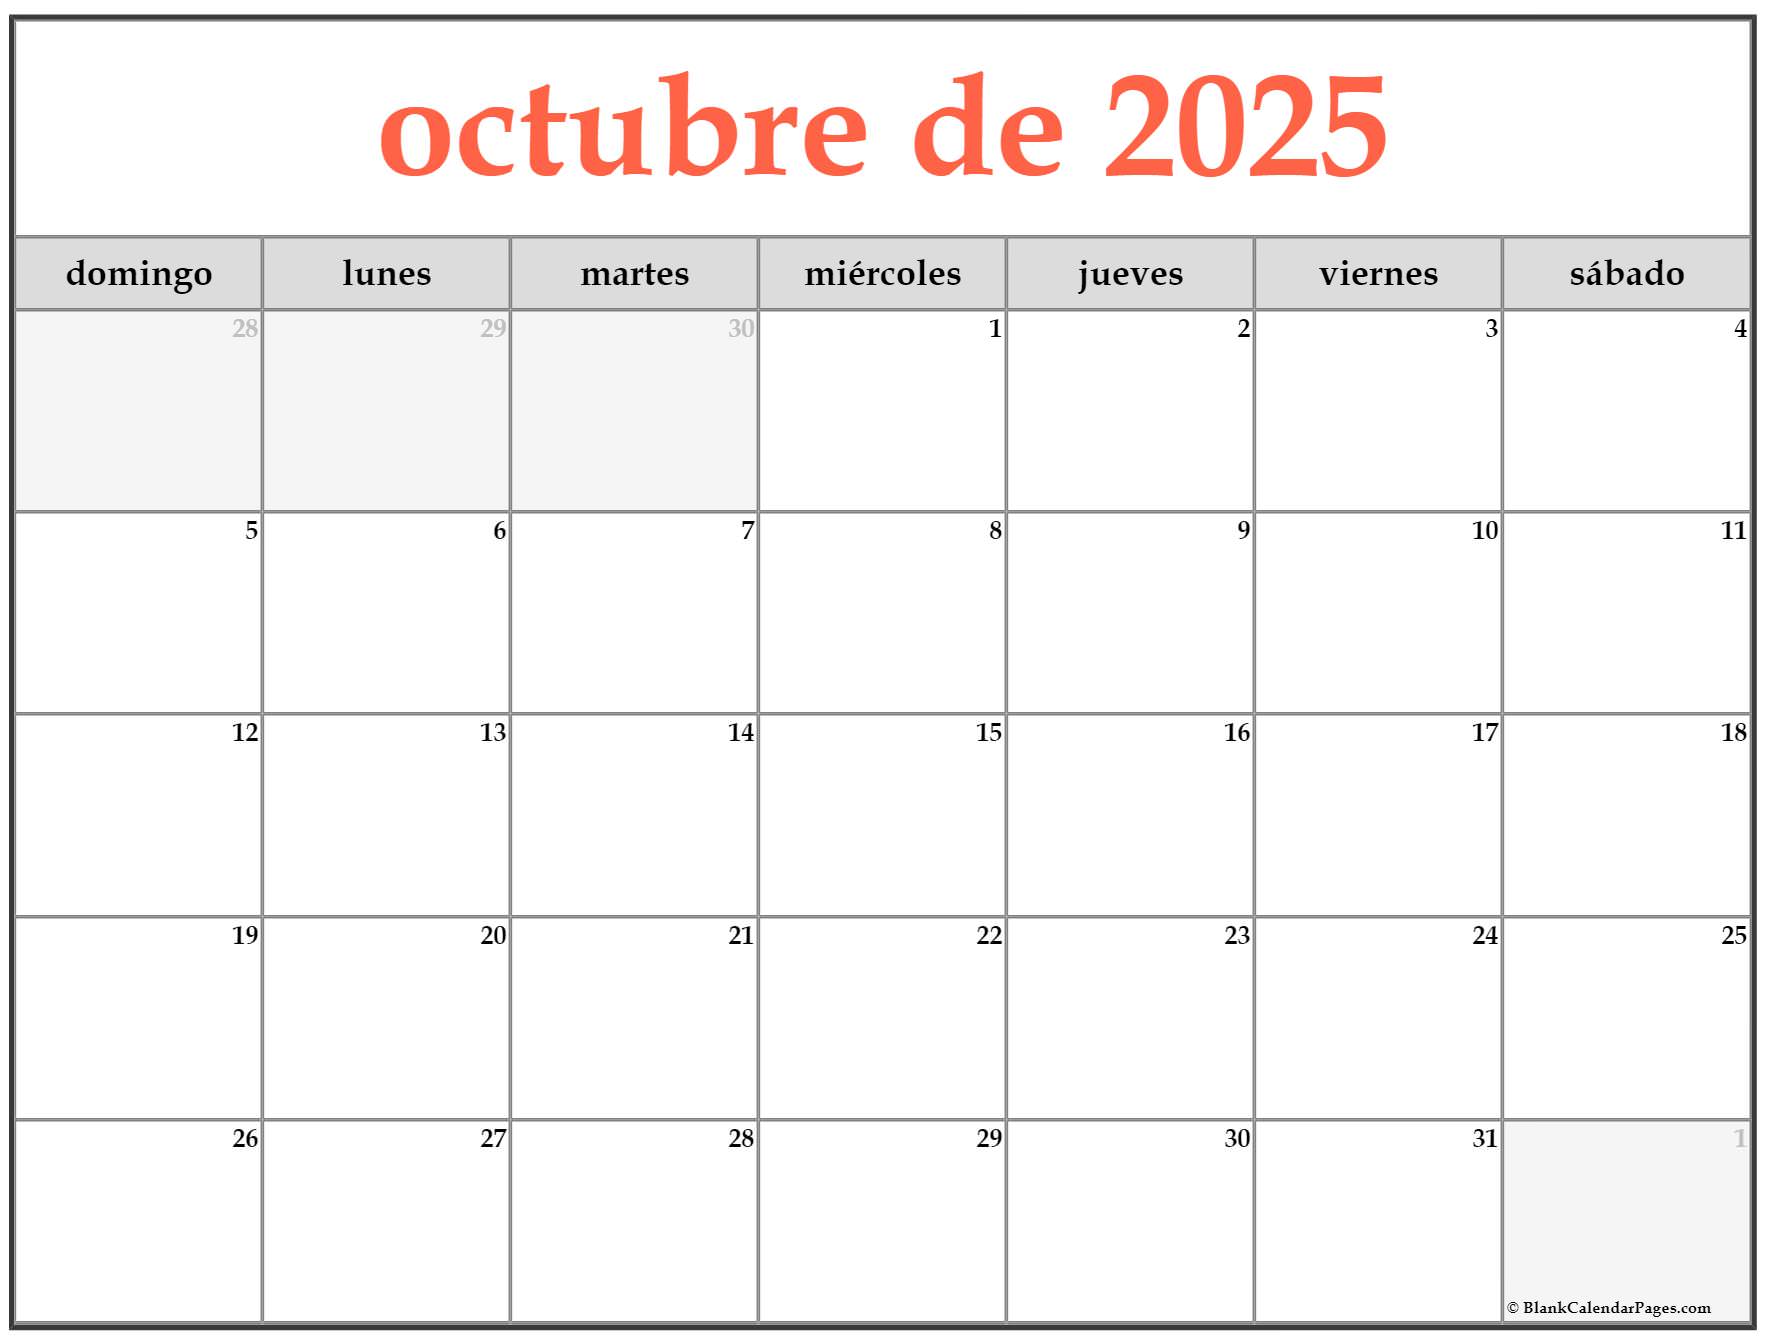 octubre-de-2025-calendario-gratis-calendario-octubre